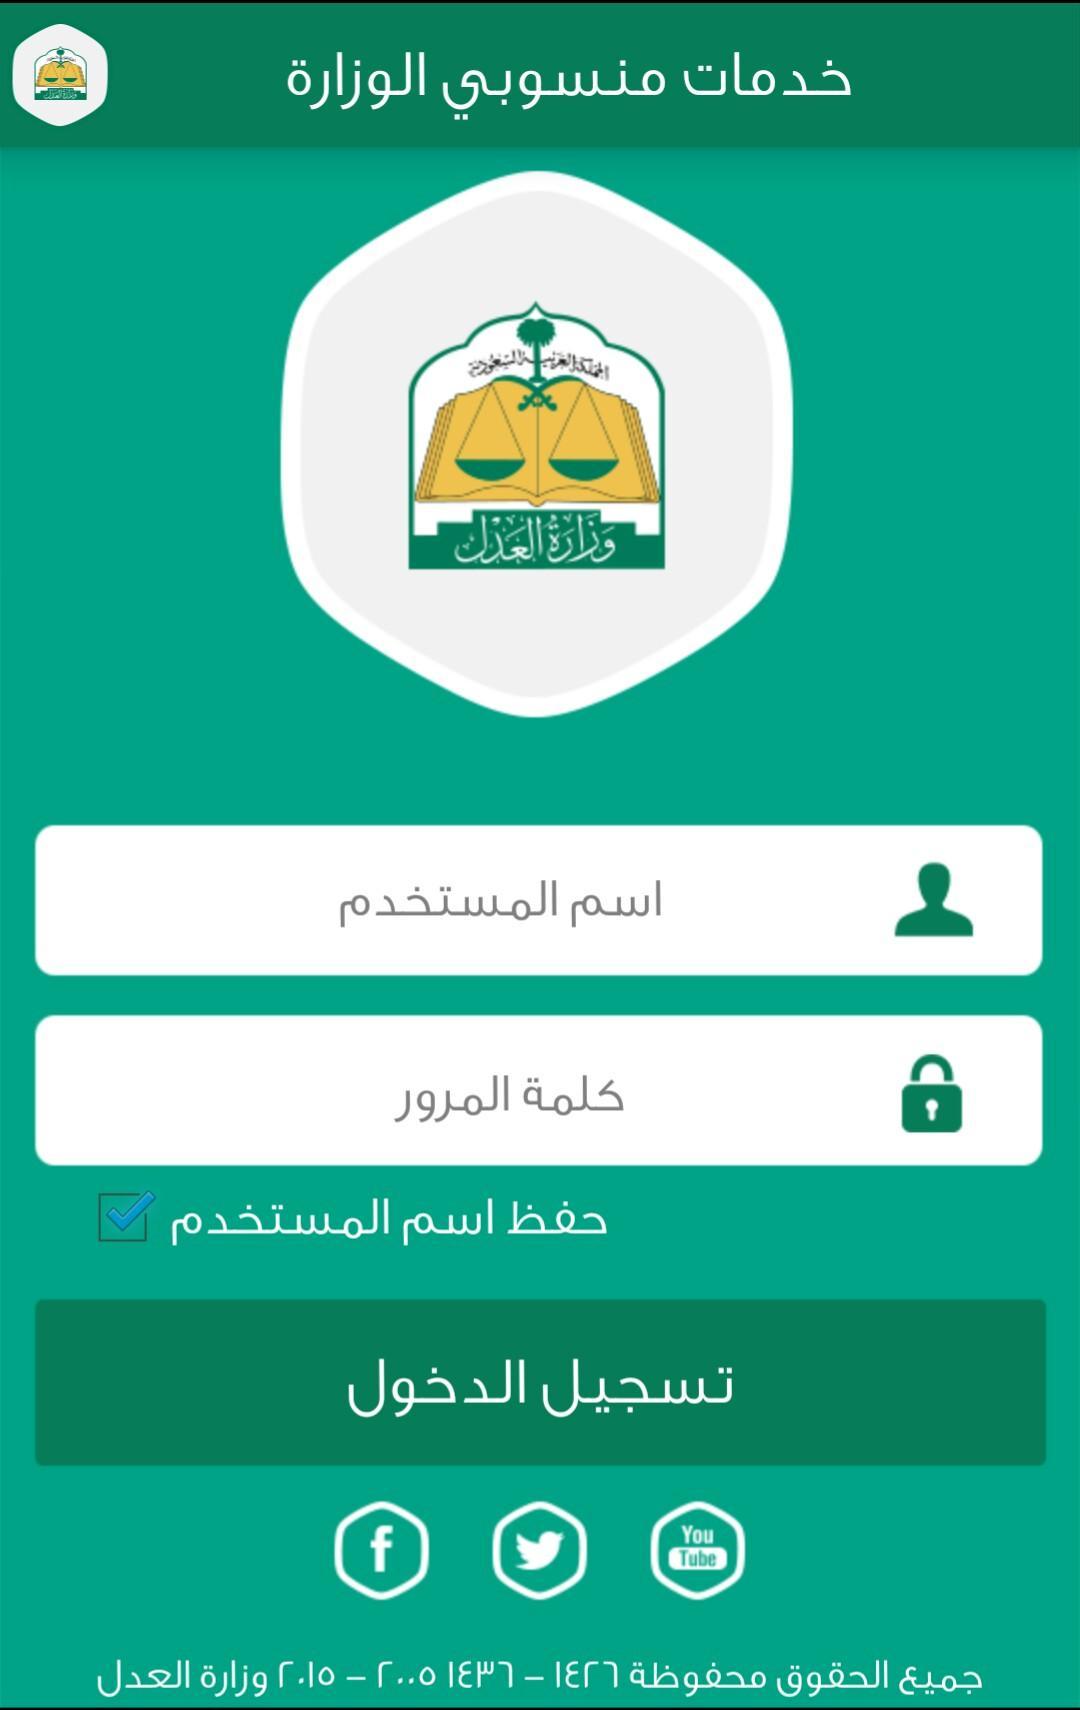 منسوبي وزارة العدل السعودية for Android - APK Download